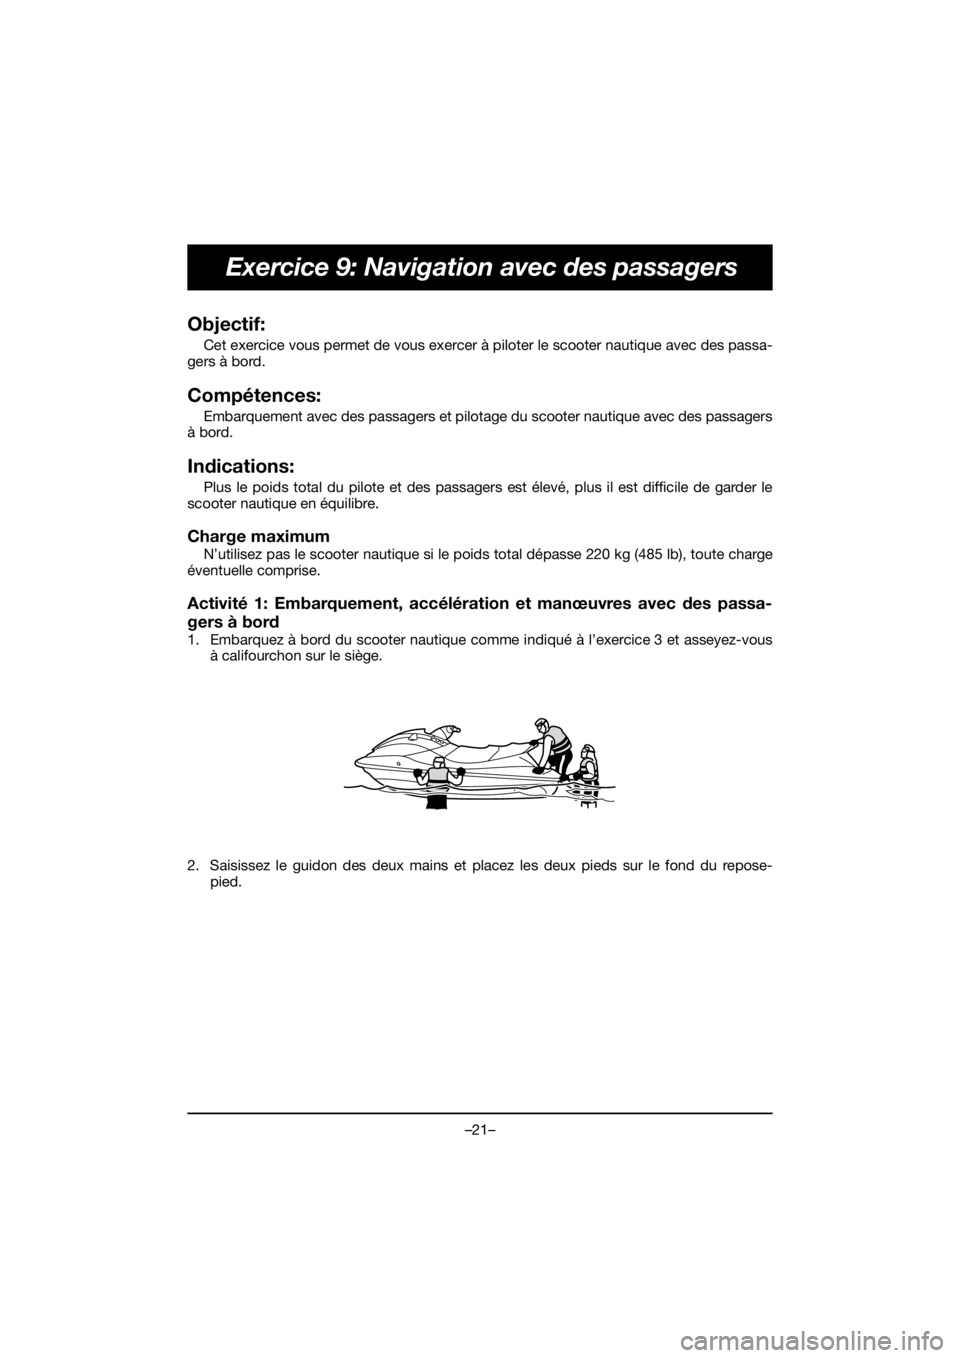 YAMAHA EX DELUXE 2019  Betriebsanleitungen (in German) –21–
Exercice 9: Navigation avec des passagers
Objectif: 
Cet exercice vous permet de vous exercer à piloter le scooter nautique avec des passa-
gers à bord.
Compétences: 
Embarquement avec des